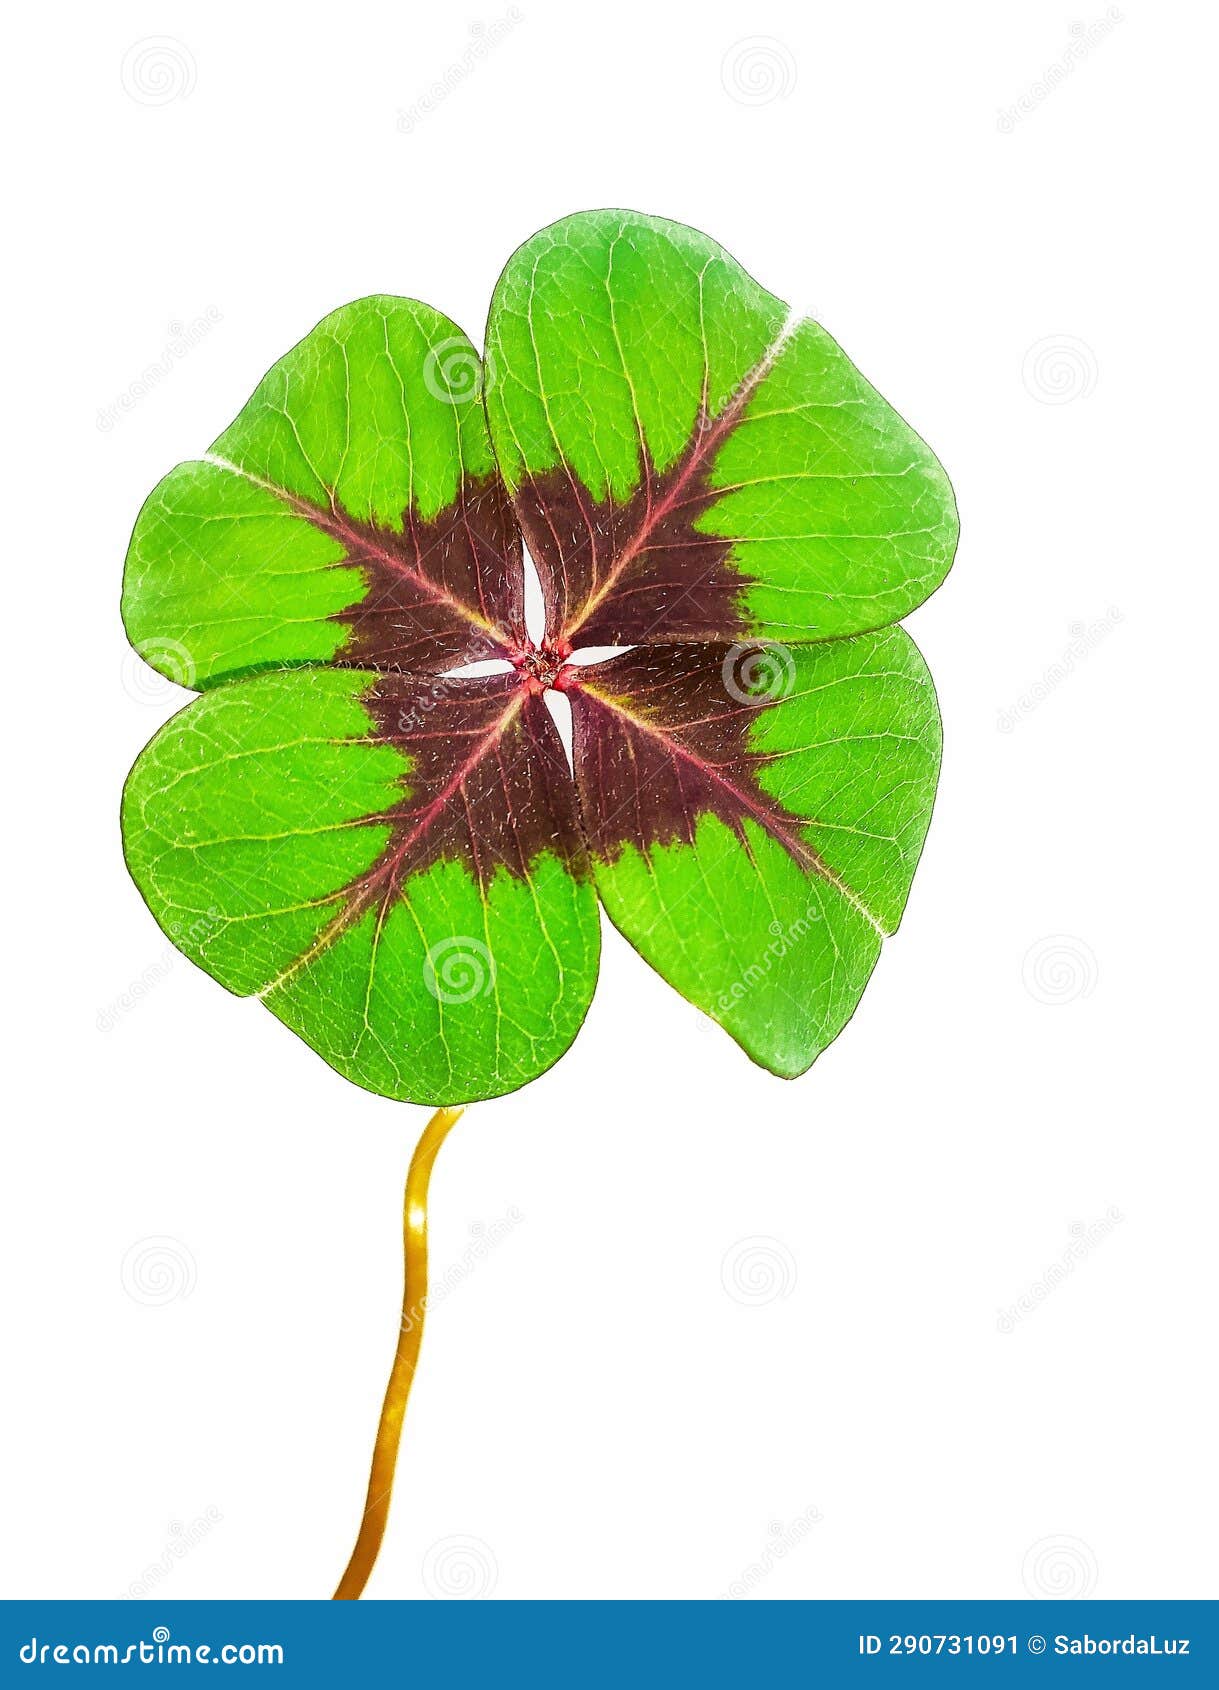 four-leaf clover on a black background